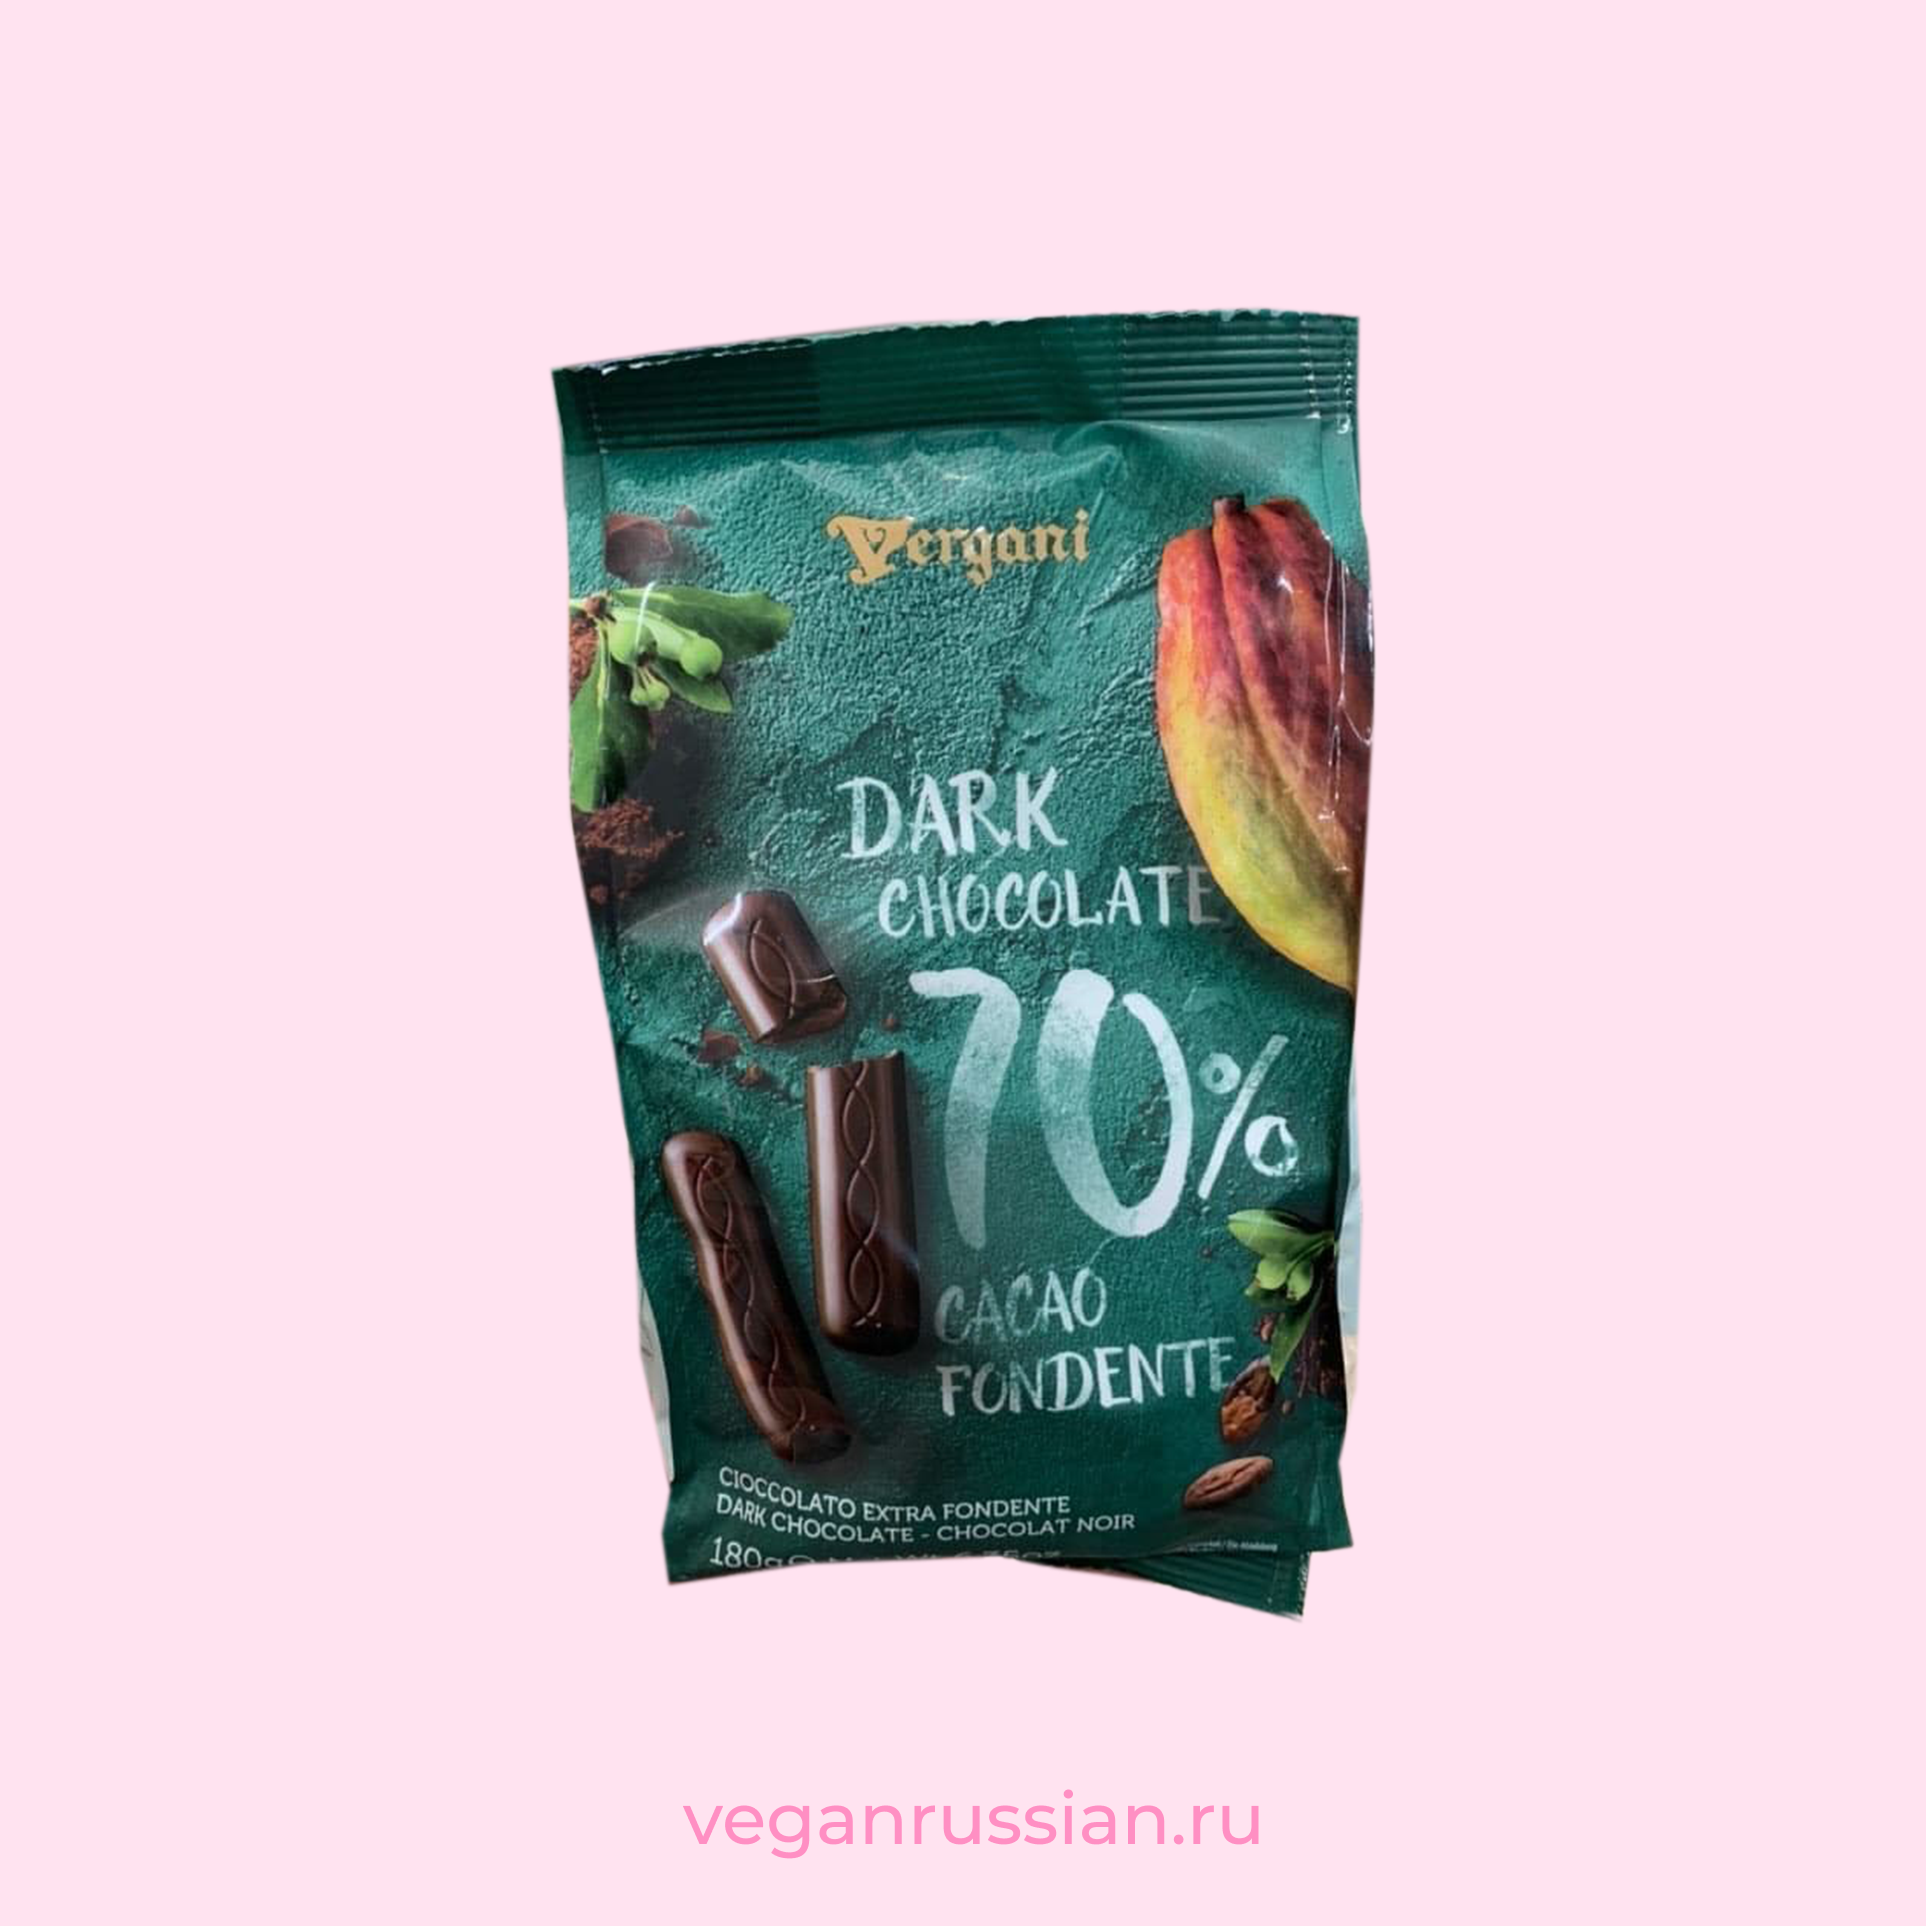 Шоколадные конфеты dark chocolate 70% Vergani 180 г